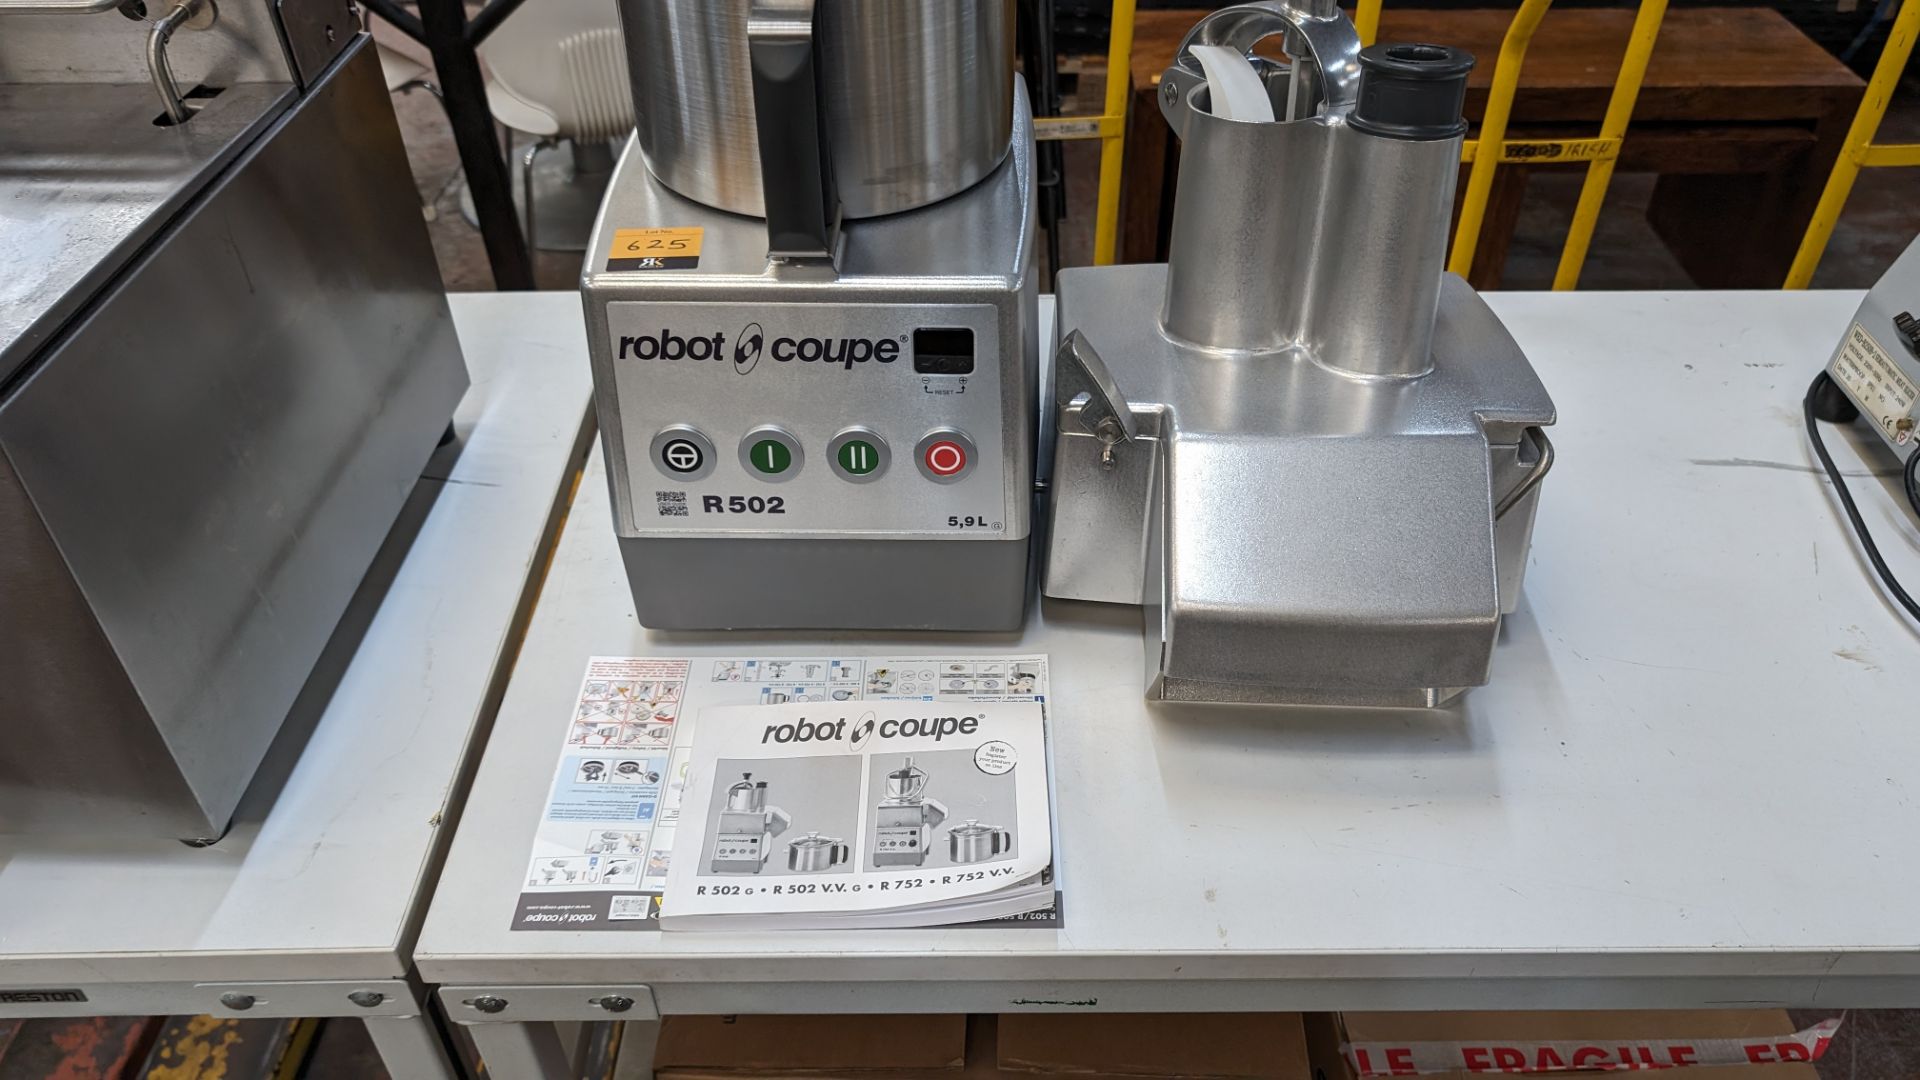 Robot Coupe model R502 5.9L commercial food processor plus vegetable processor attachment. Both the - Bild 3 aus 10